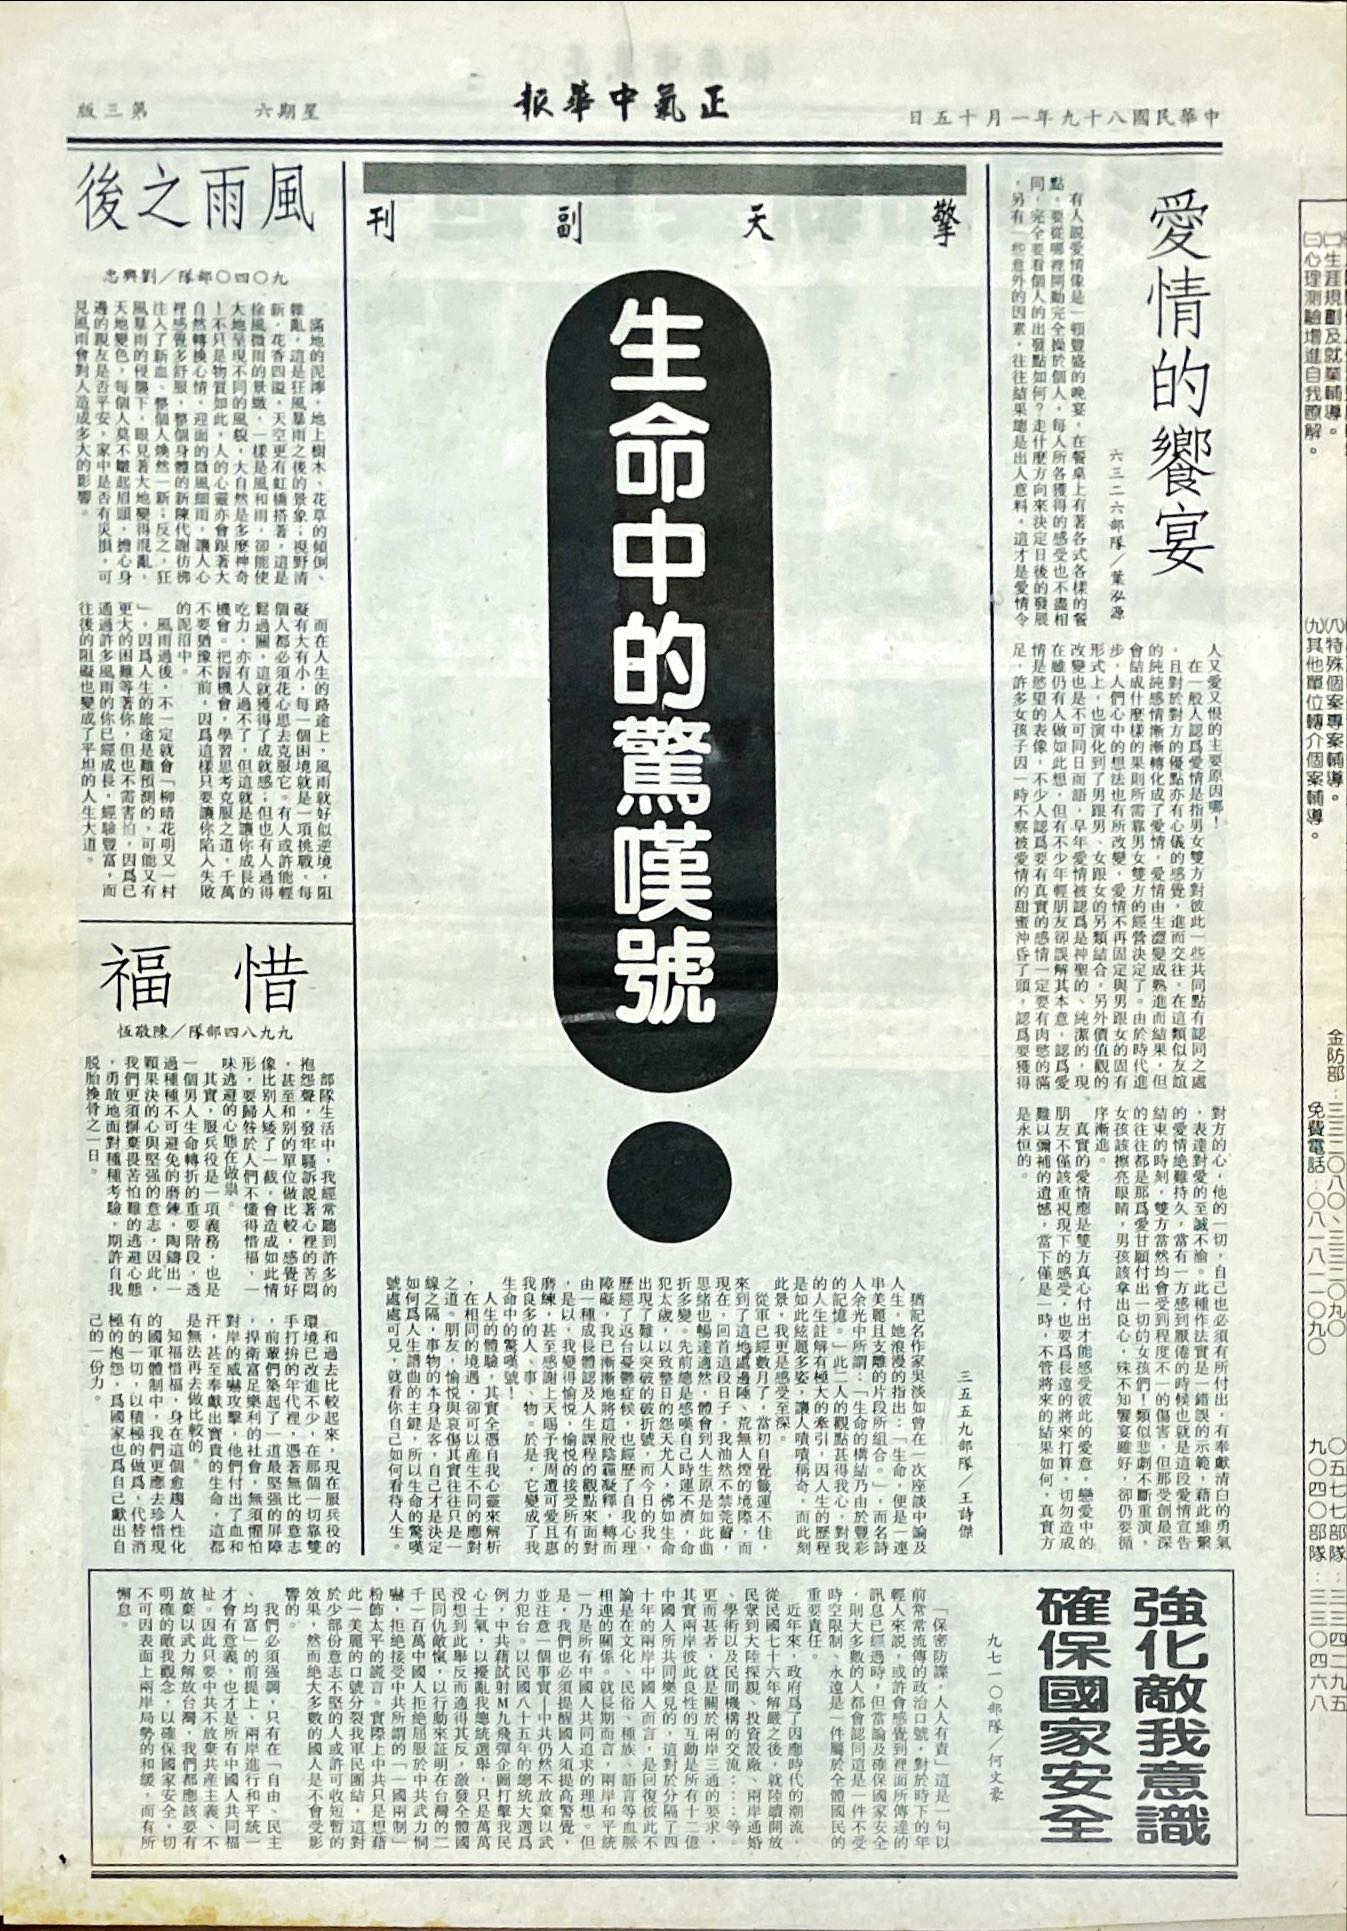 民國八十九年一月十五日正氣中華報副刊—生命中的驚嘆號